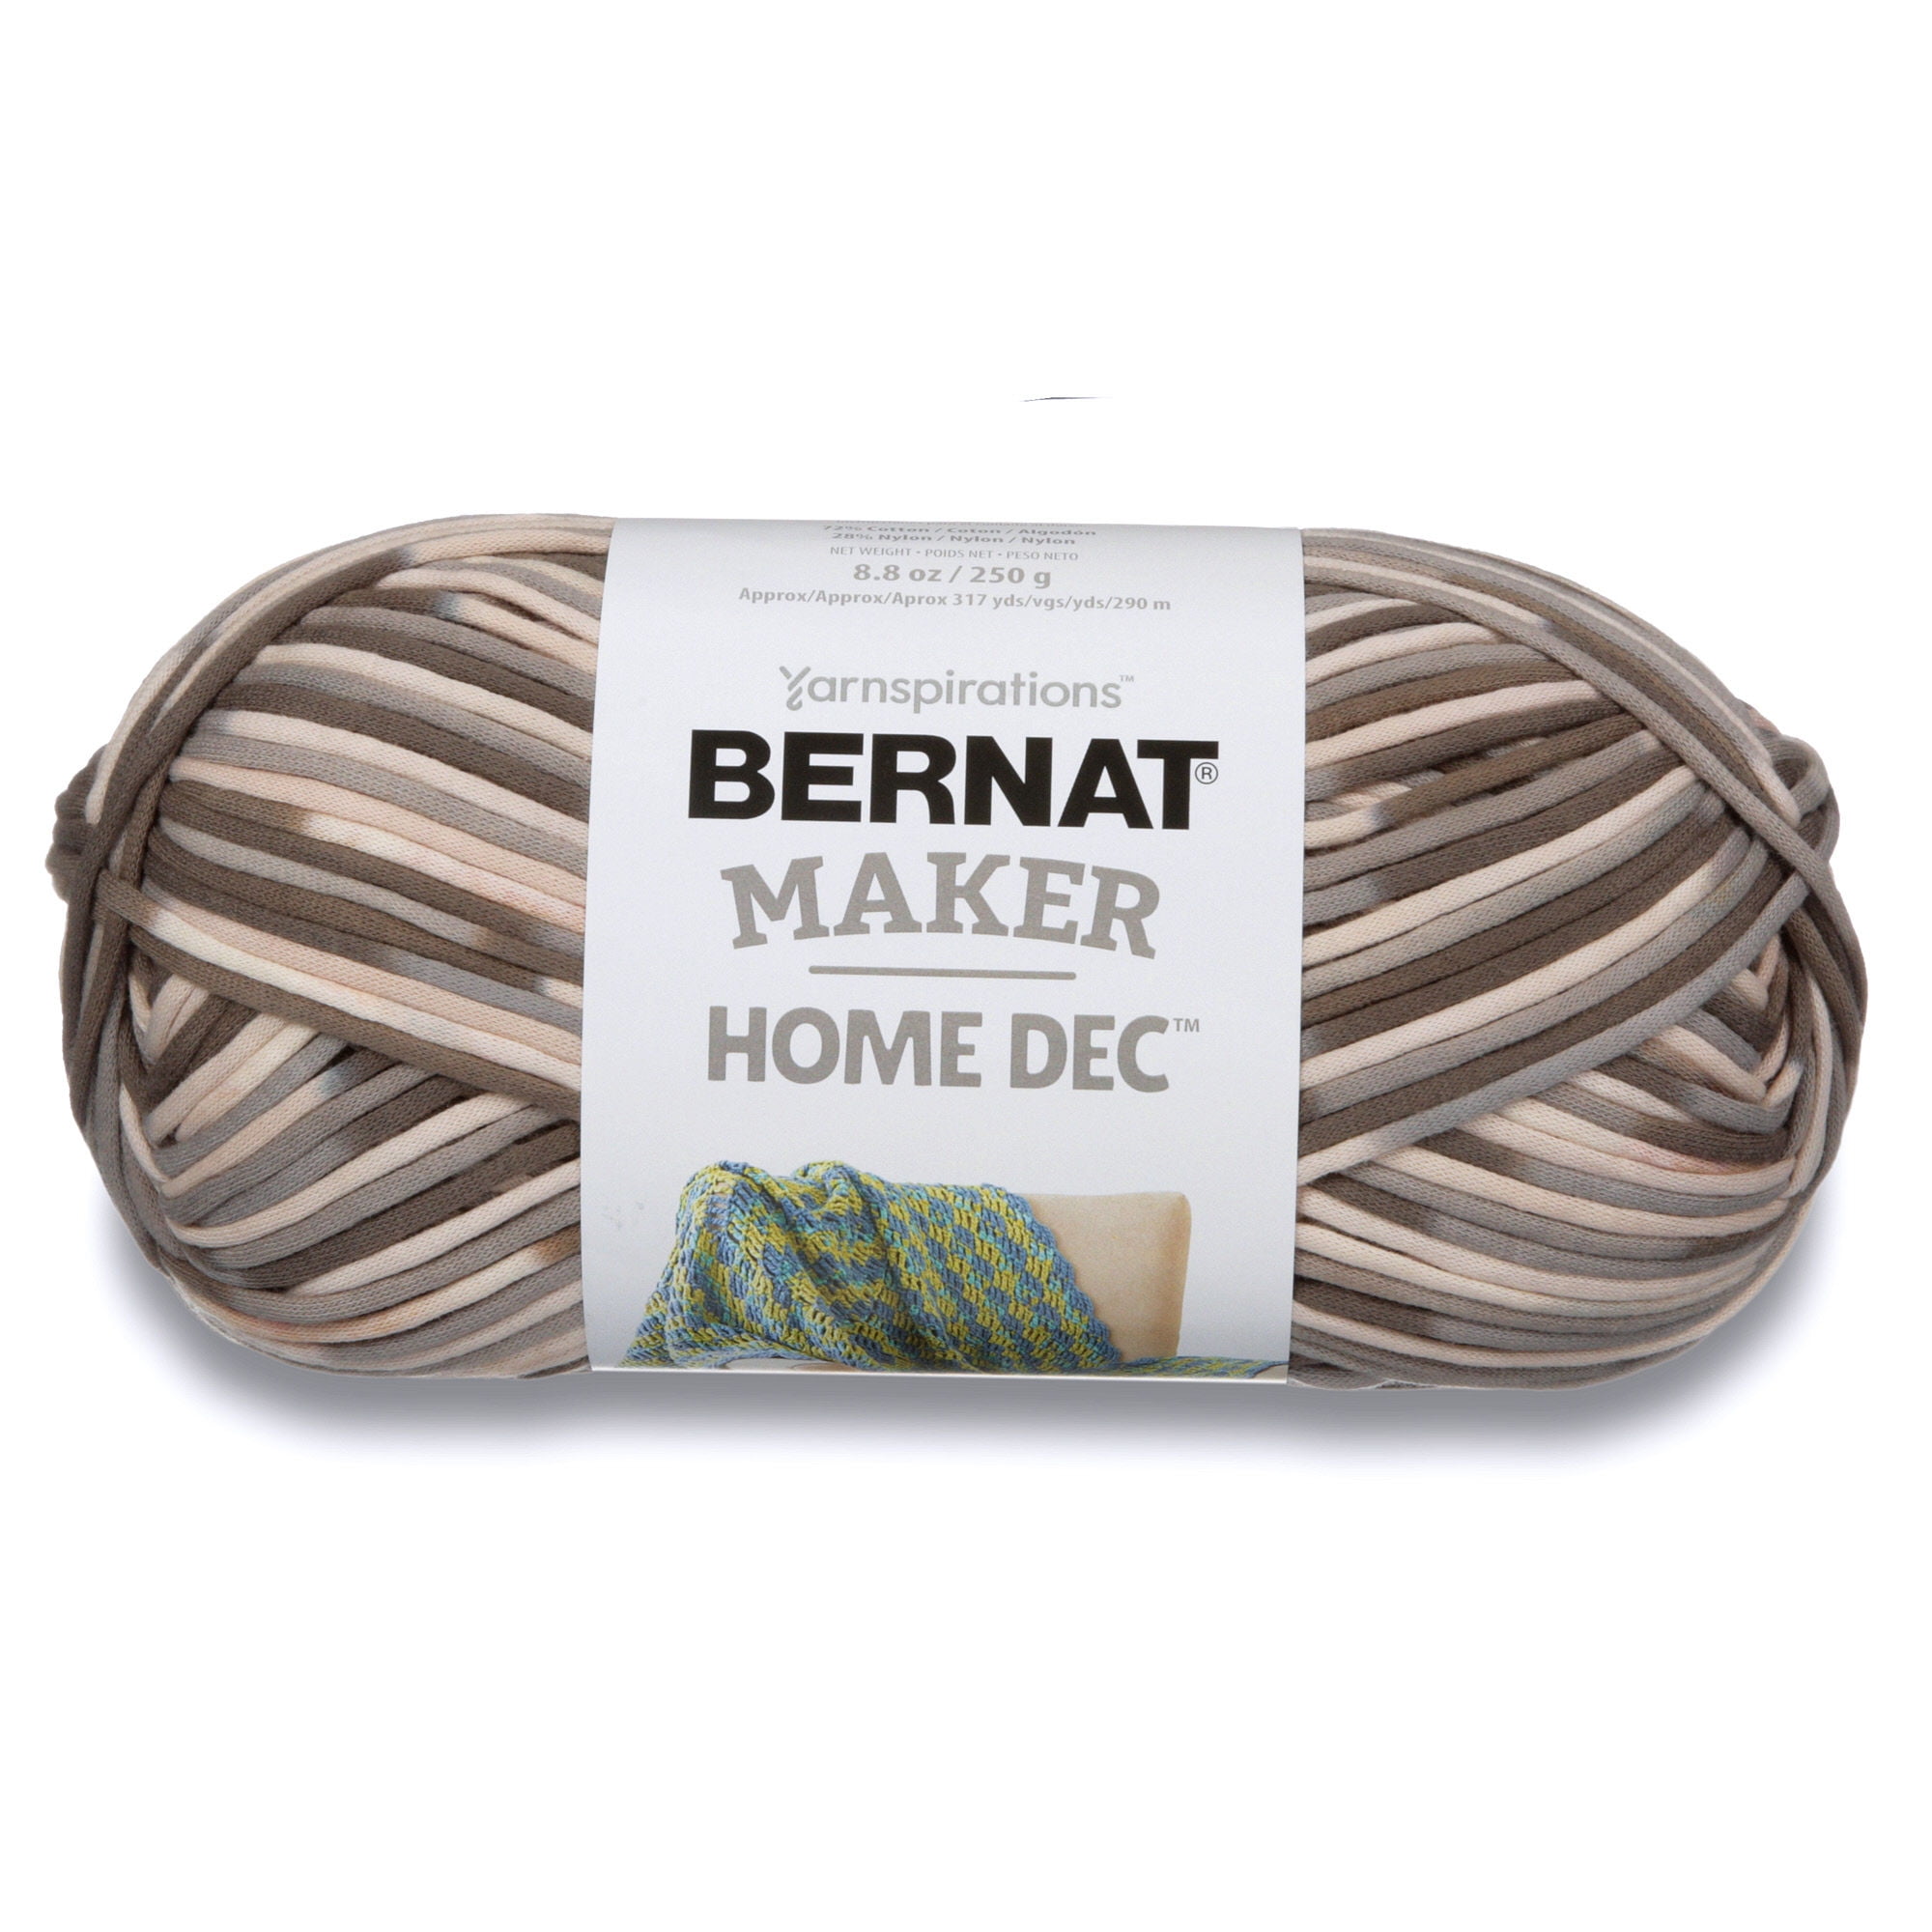 Other, Bernat Maker Home Dec Yarn 4 Skeins Nwt